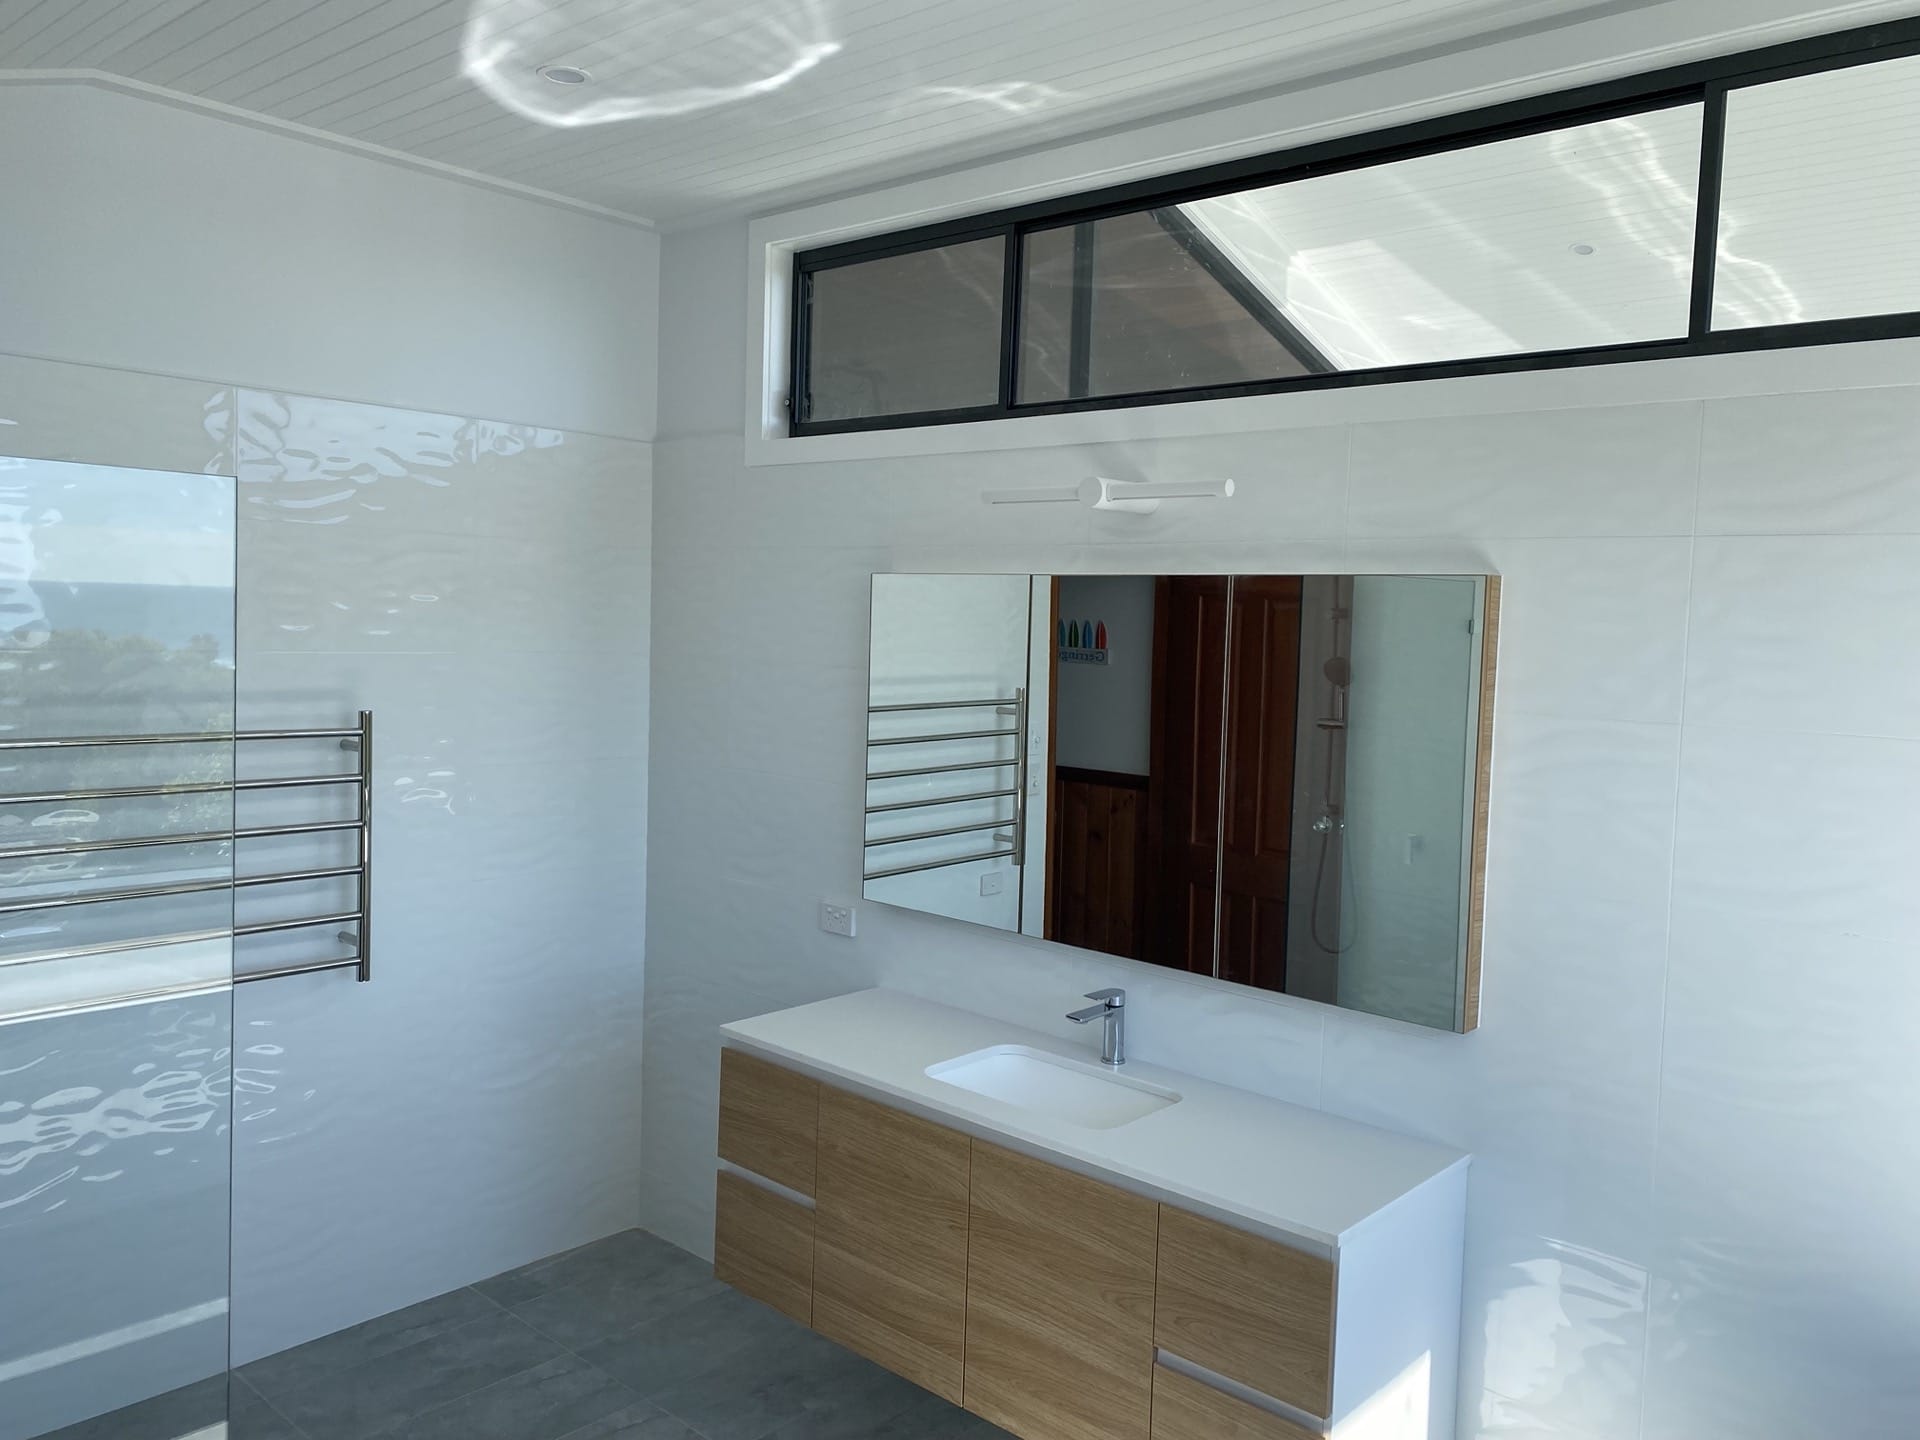 Bathroom renovation by Milliken Builders Illawarra NSW